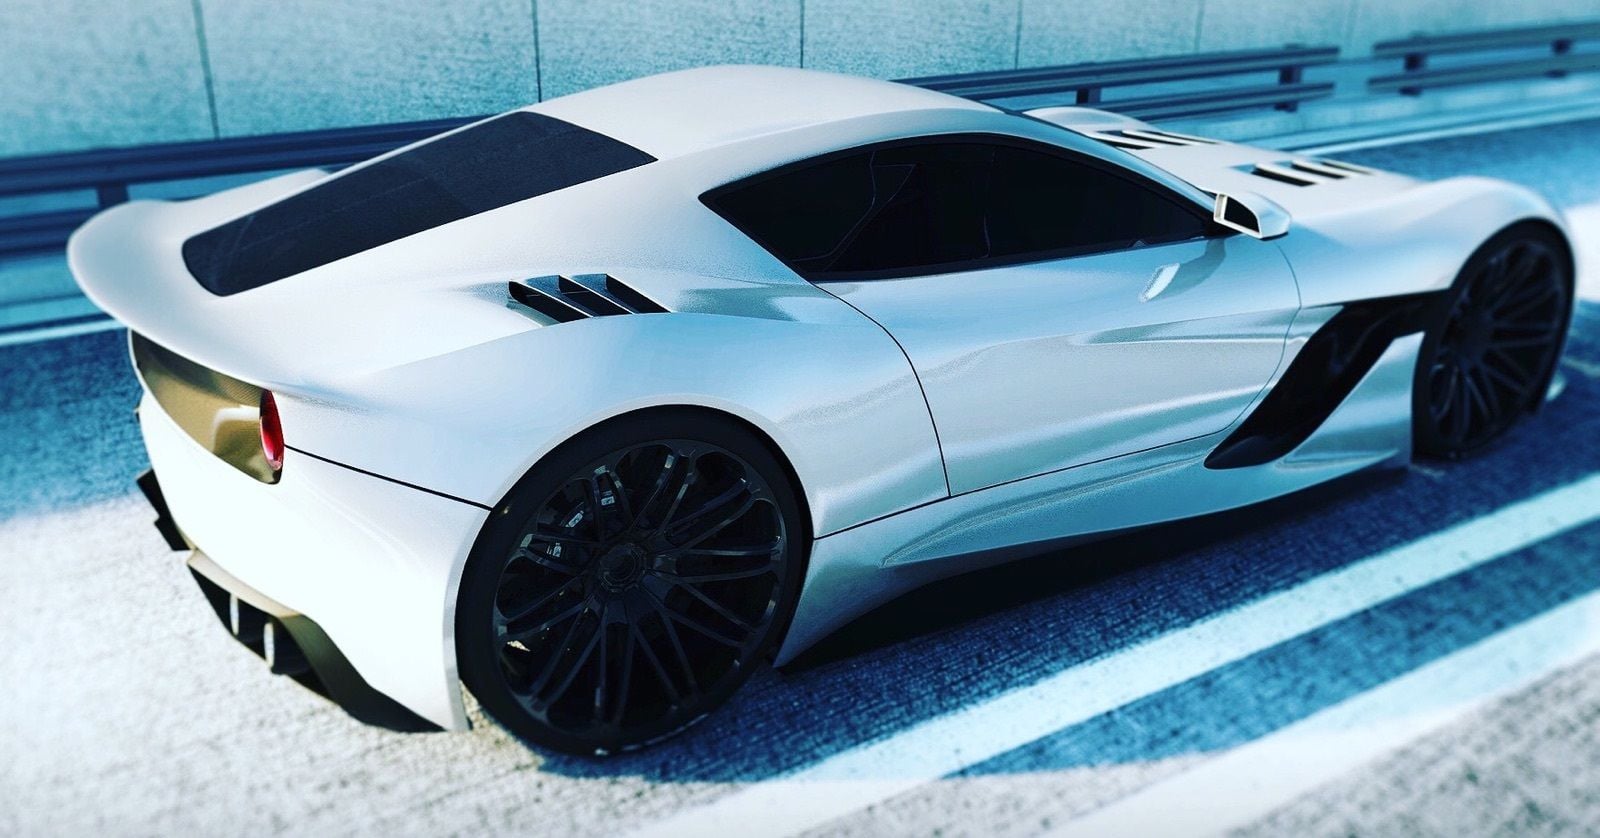 2020 Mid Engine Corvette (Concept Design) - Page 3 - CorvetteForum - Chevrolet ...